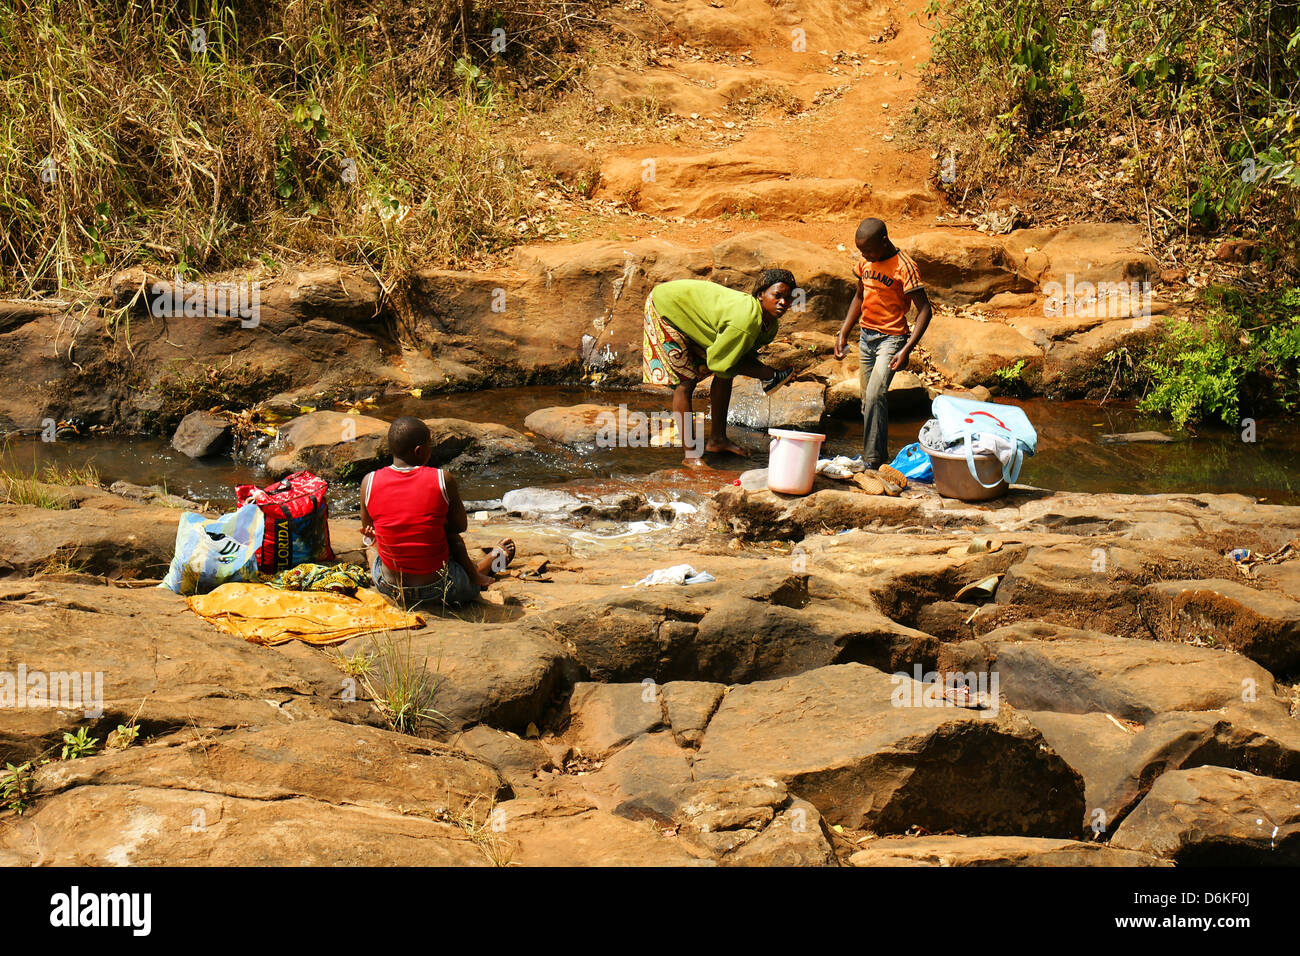 FONGO-TONGO, Camerun - gennaio 20: giovane donna africana con giovani uomini a lavare i panni in un fiume su gennaio 20, 2013 in Cameroo Foto Stock